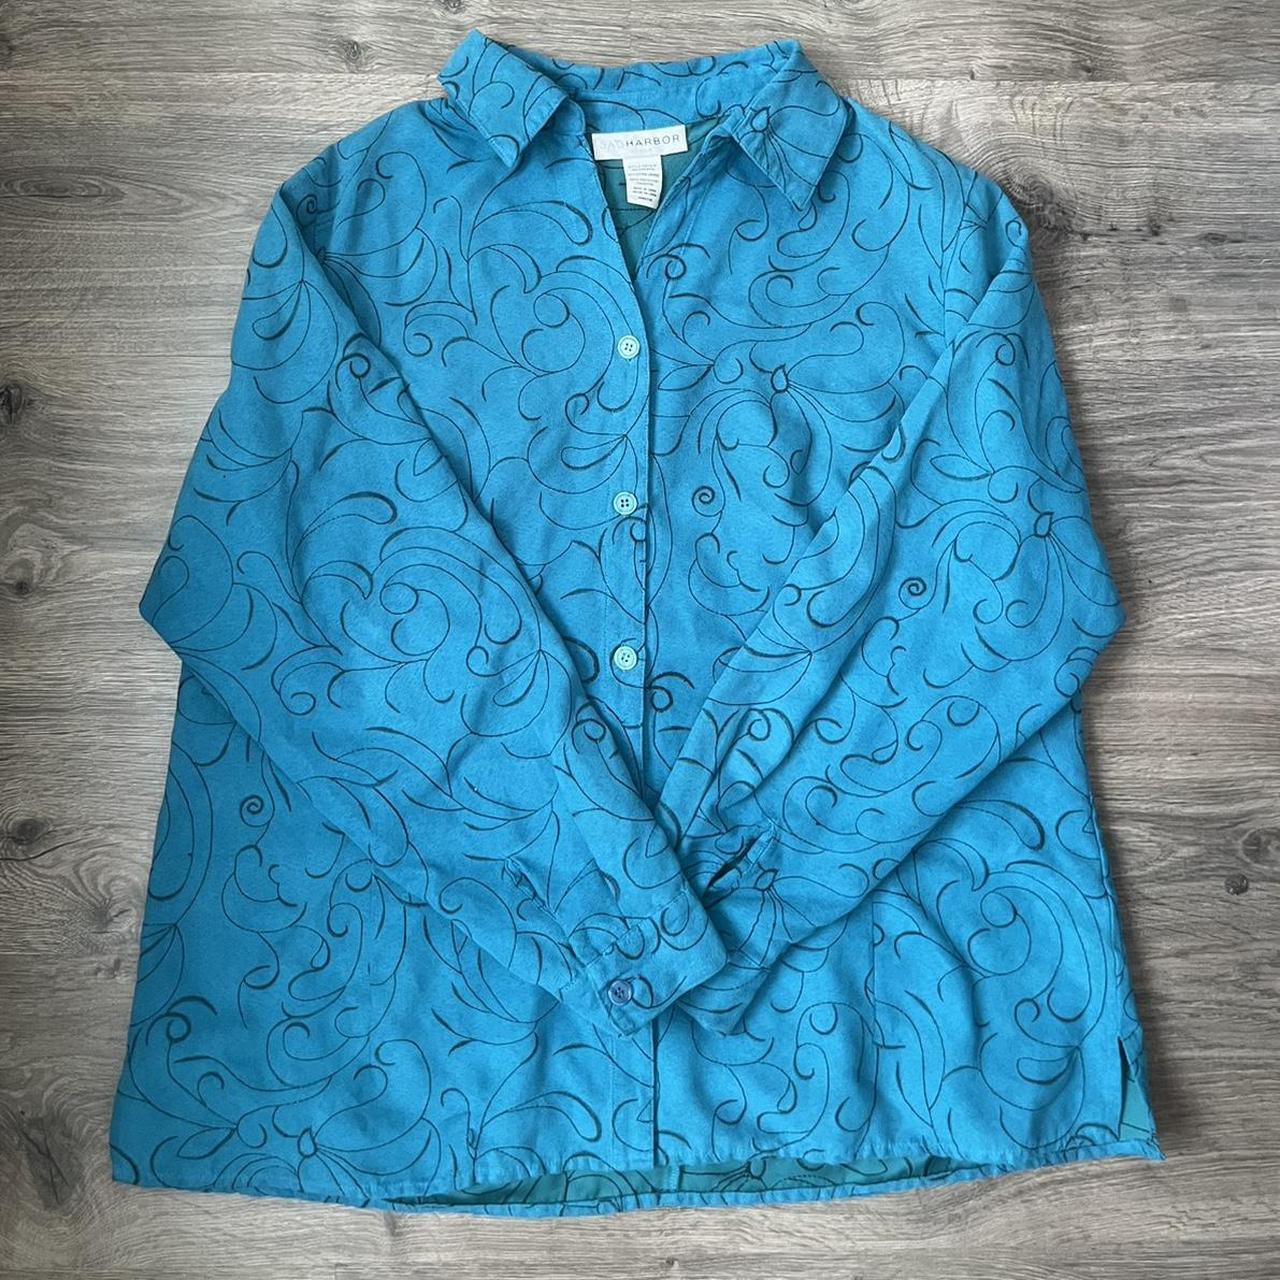 vintage sag Harbor blue teal shirt jacket with black... - Depop